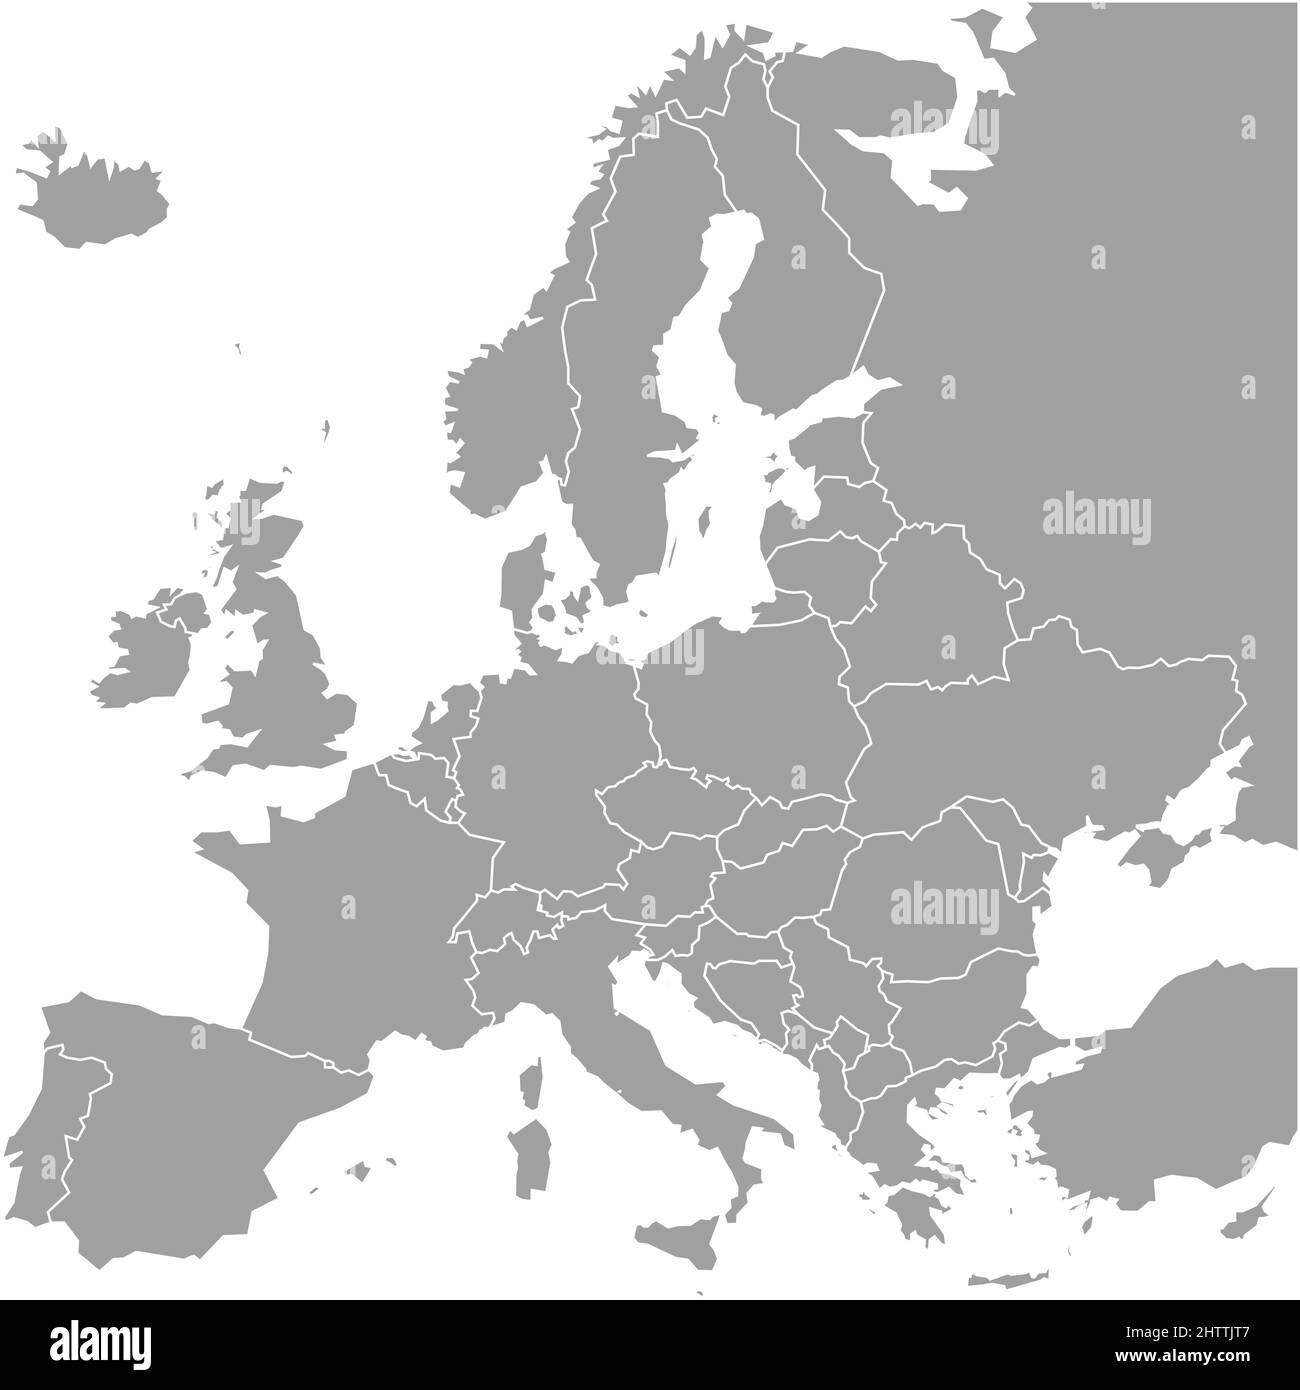 Leere Europakarte. Vereinfachte Vektorkarte in Grau mit weißen Rändern auf weißem Hintergrund Stock Vektor